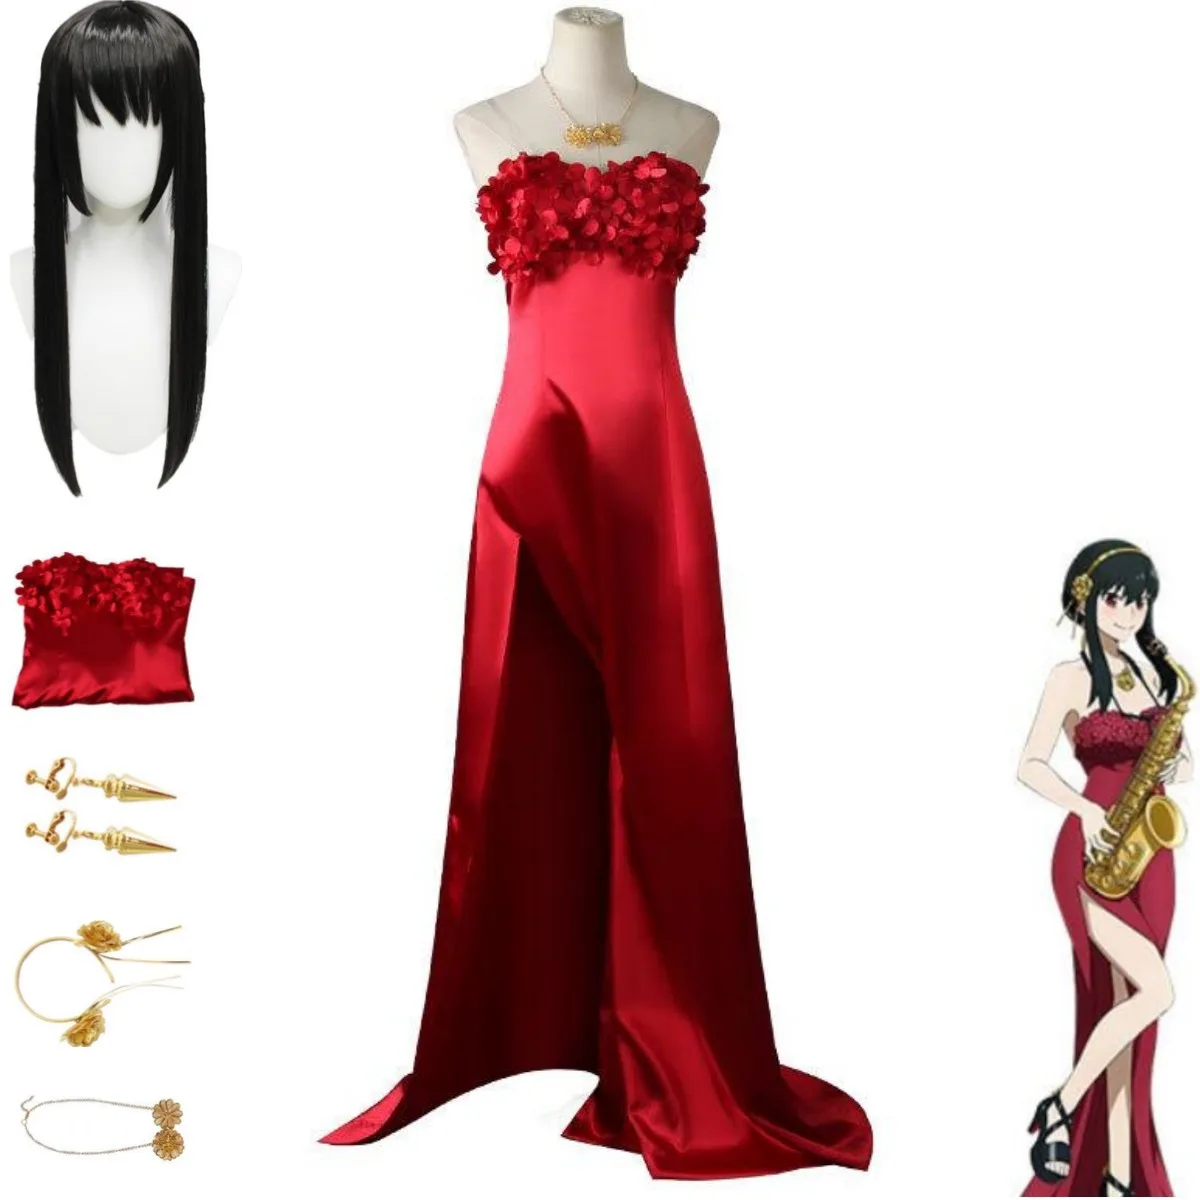 

Костюм для косплея по мотивам аниме Spy×Family Yor, красный длинный парик, юбки, вечернее платье для взрослых женщин, сексуальный карнавальный костюм